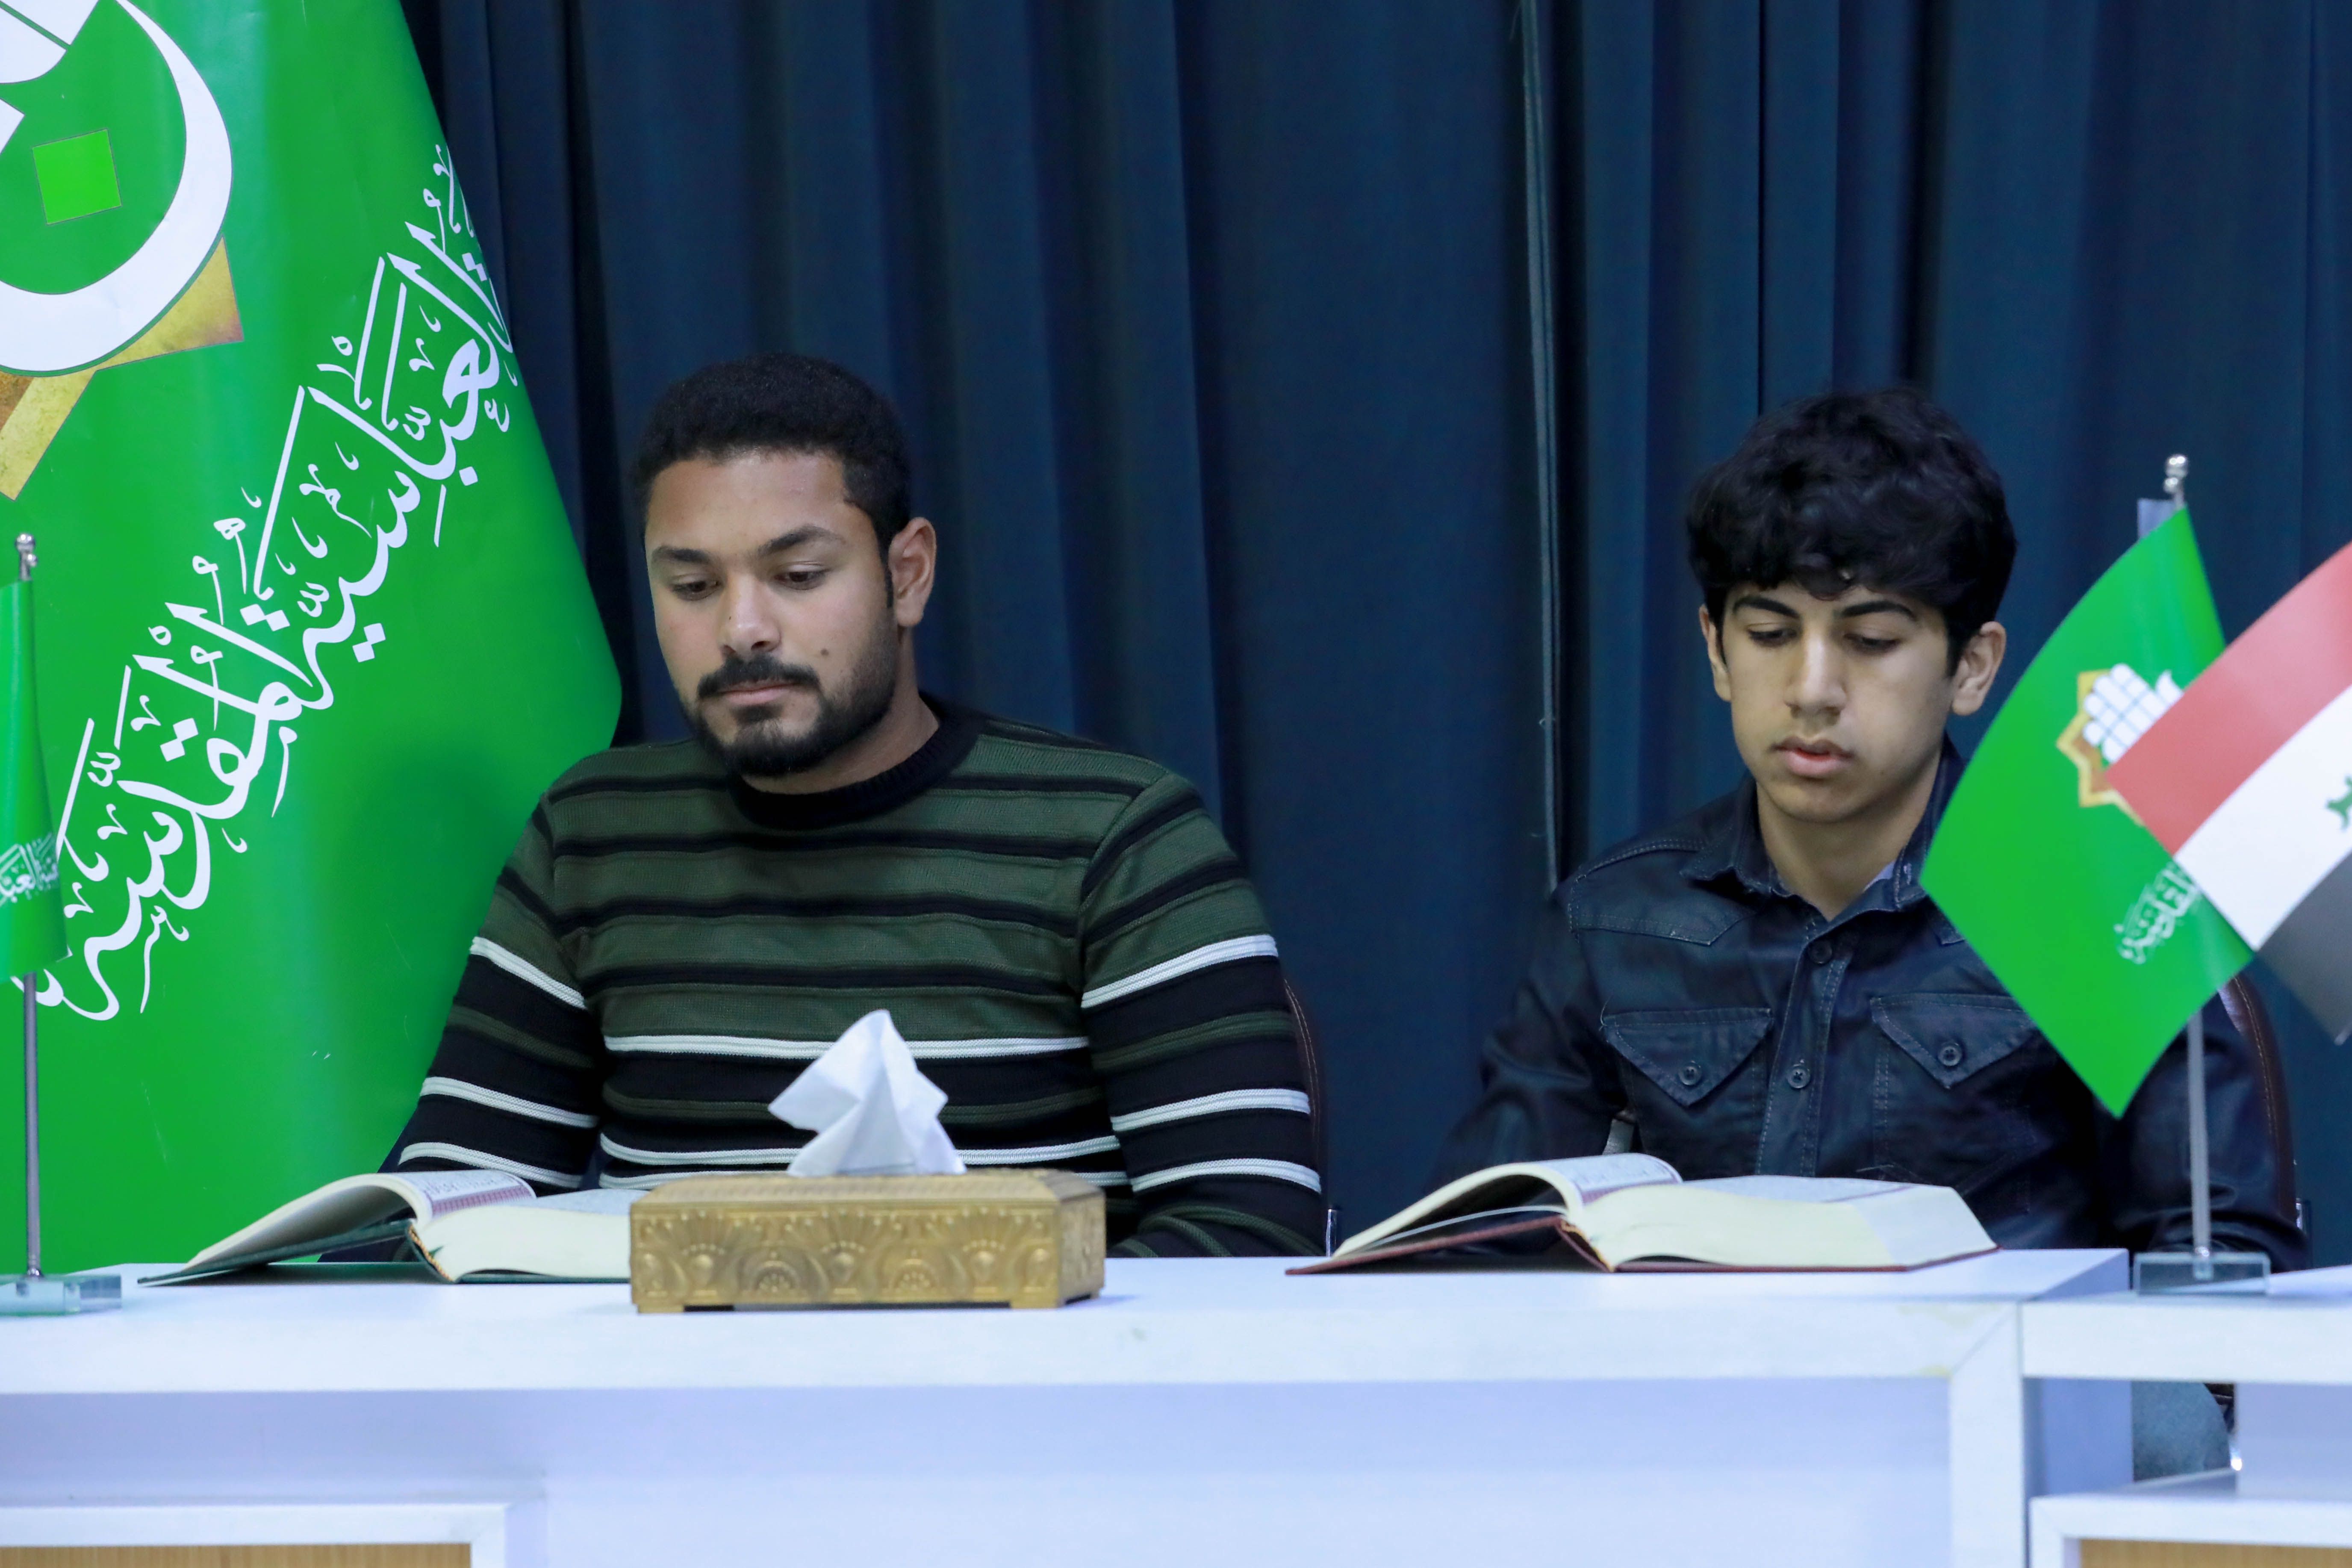 المجمع العلمي يقيم دورة لتطوير الأداء القرآني استعداداً للشهر الفضيل